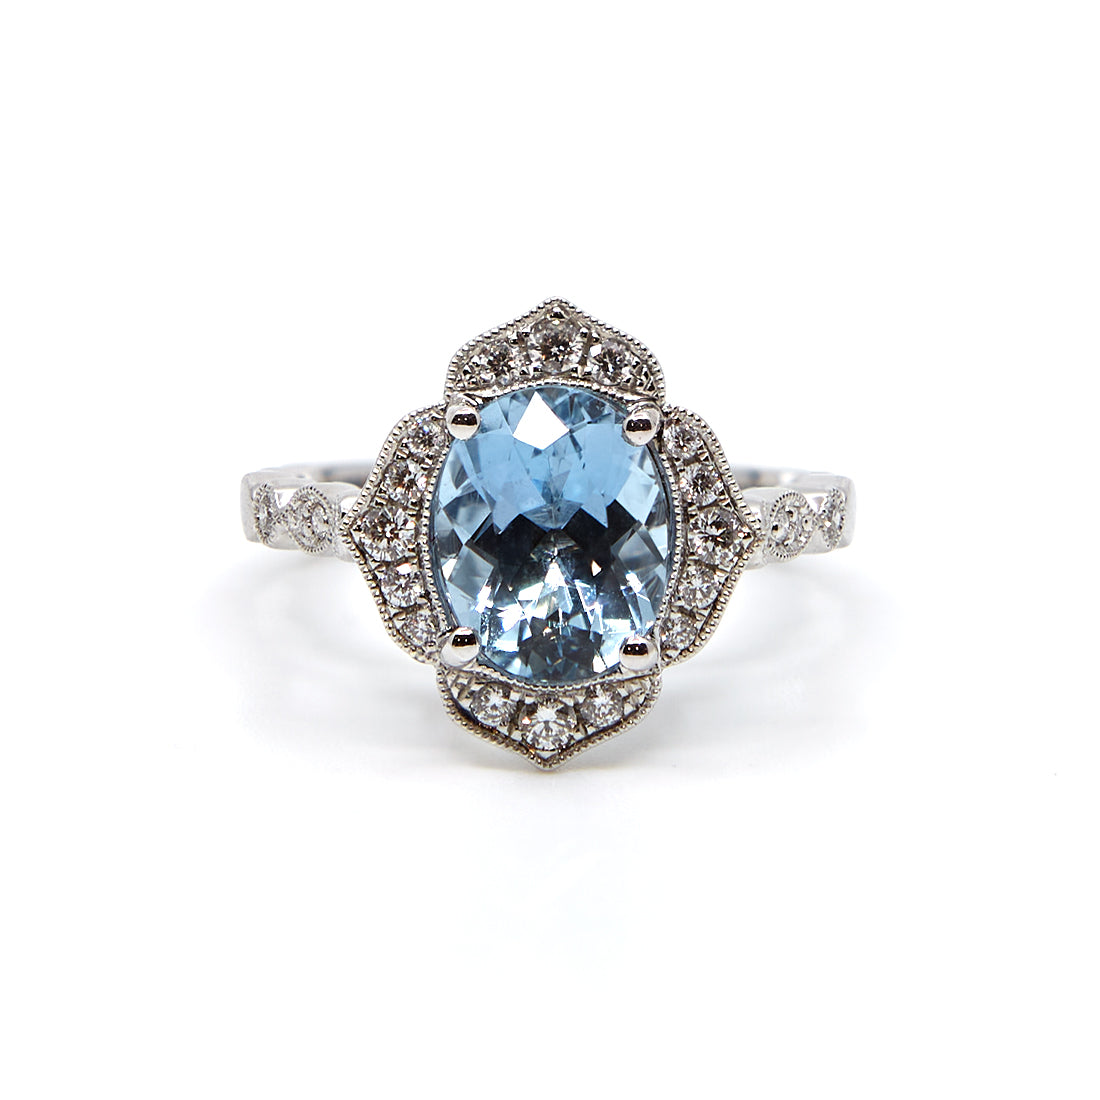 Witgouden ring in vorm van een bloem gezet met aquamarijn en diamant.